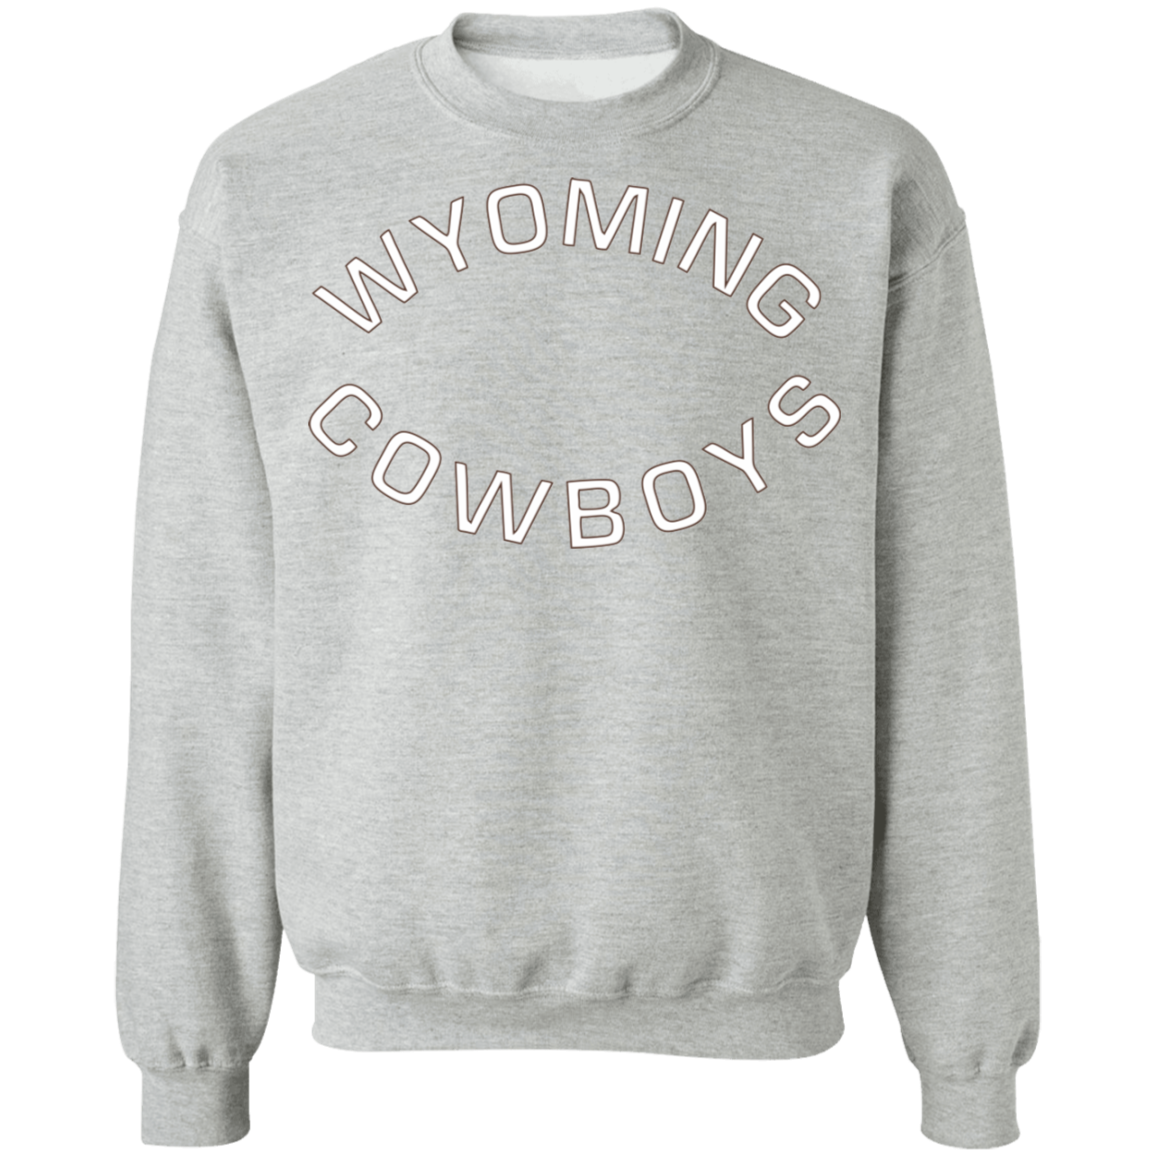 Wyoming Cowboys Crewneck Sweatshirt - Happy Spring Tee